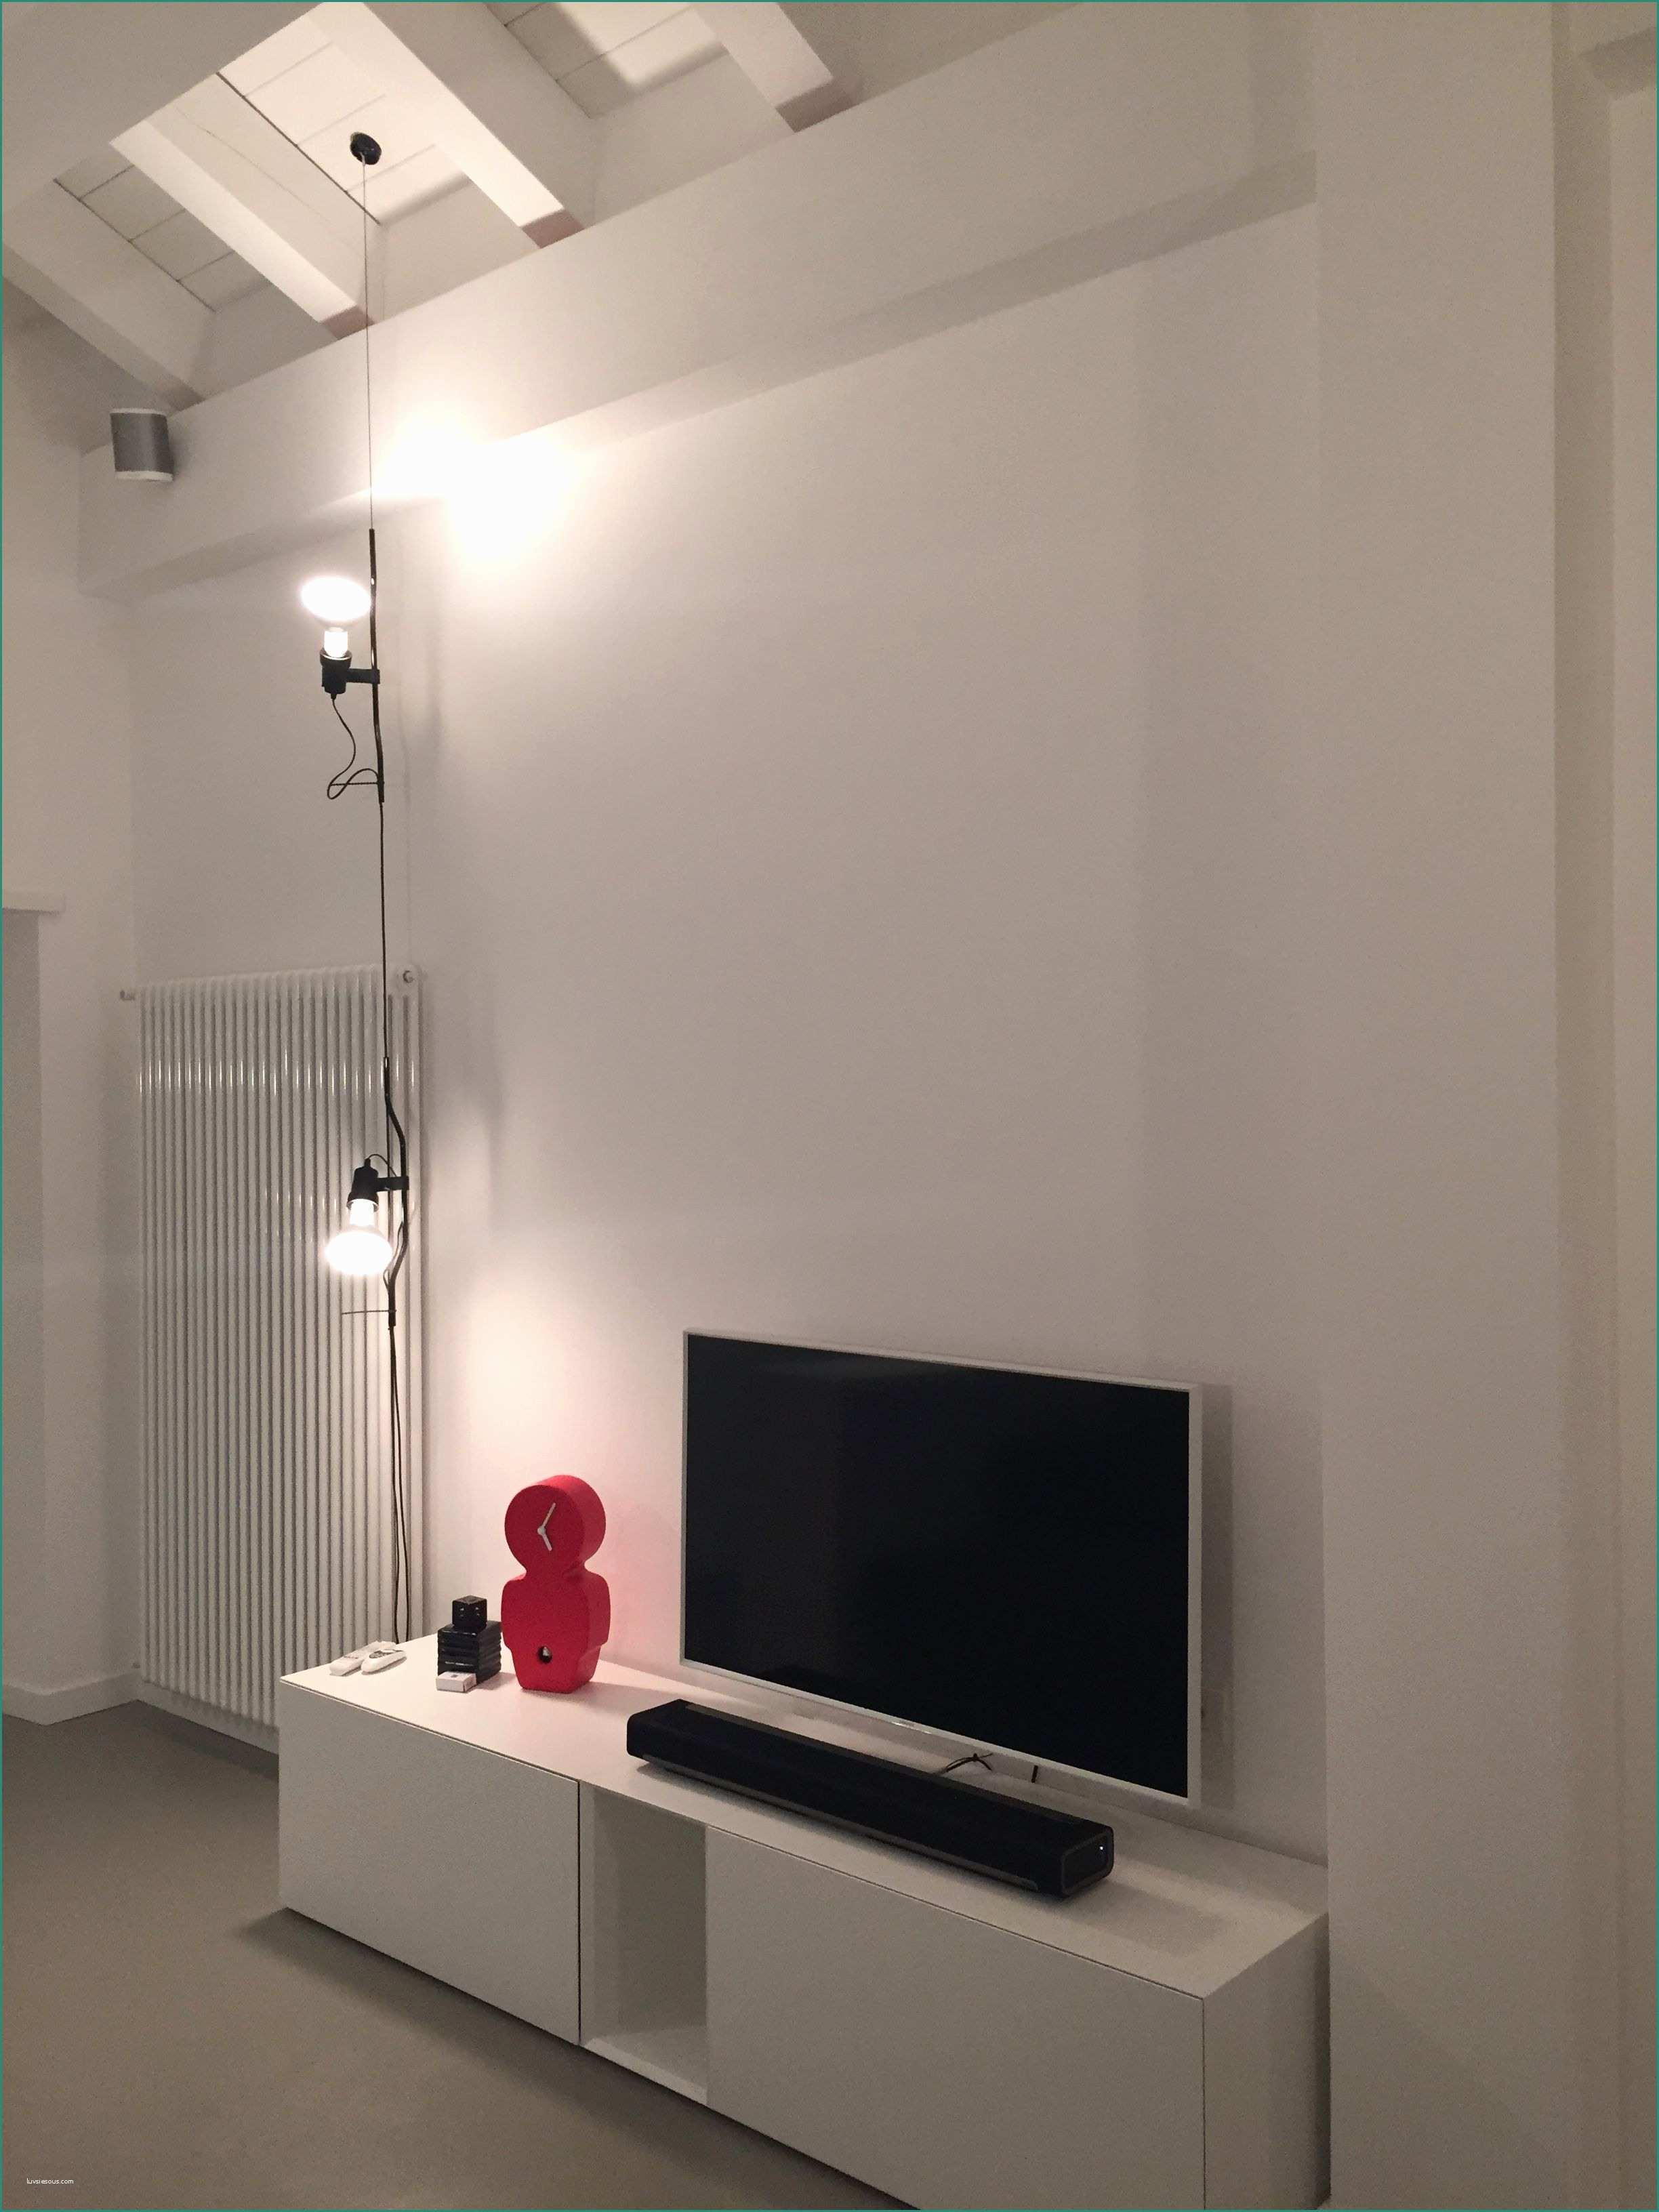 Ingresso Casa Moderna E Abitazione Privata Illuminazione soggiorno Led Lighting Design